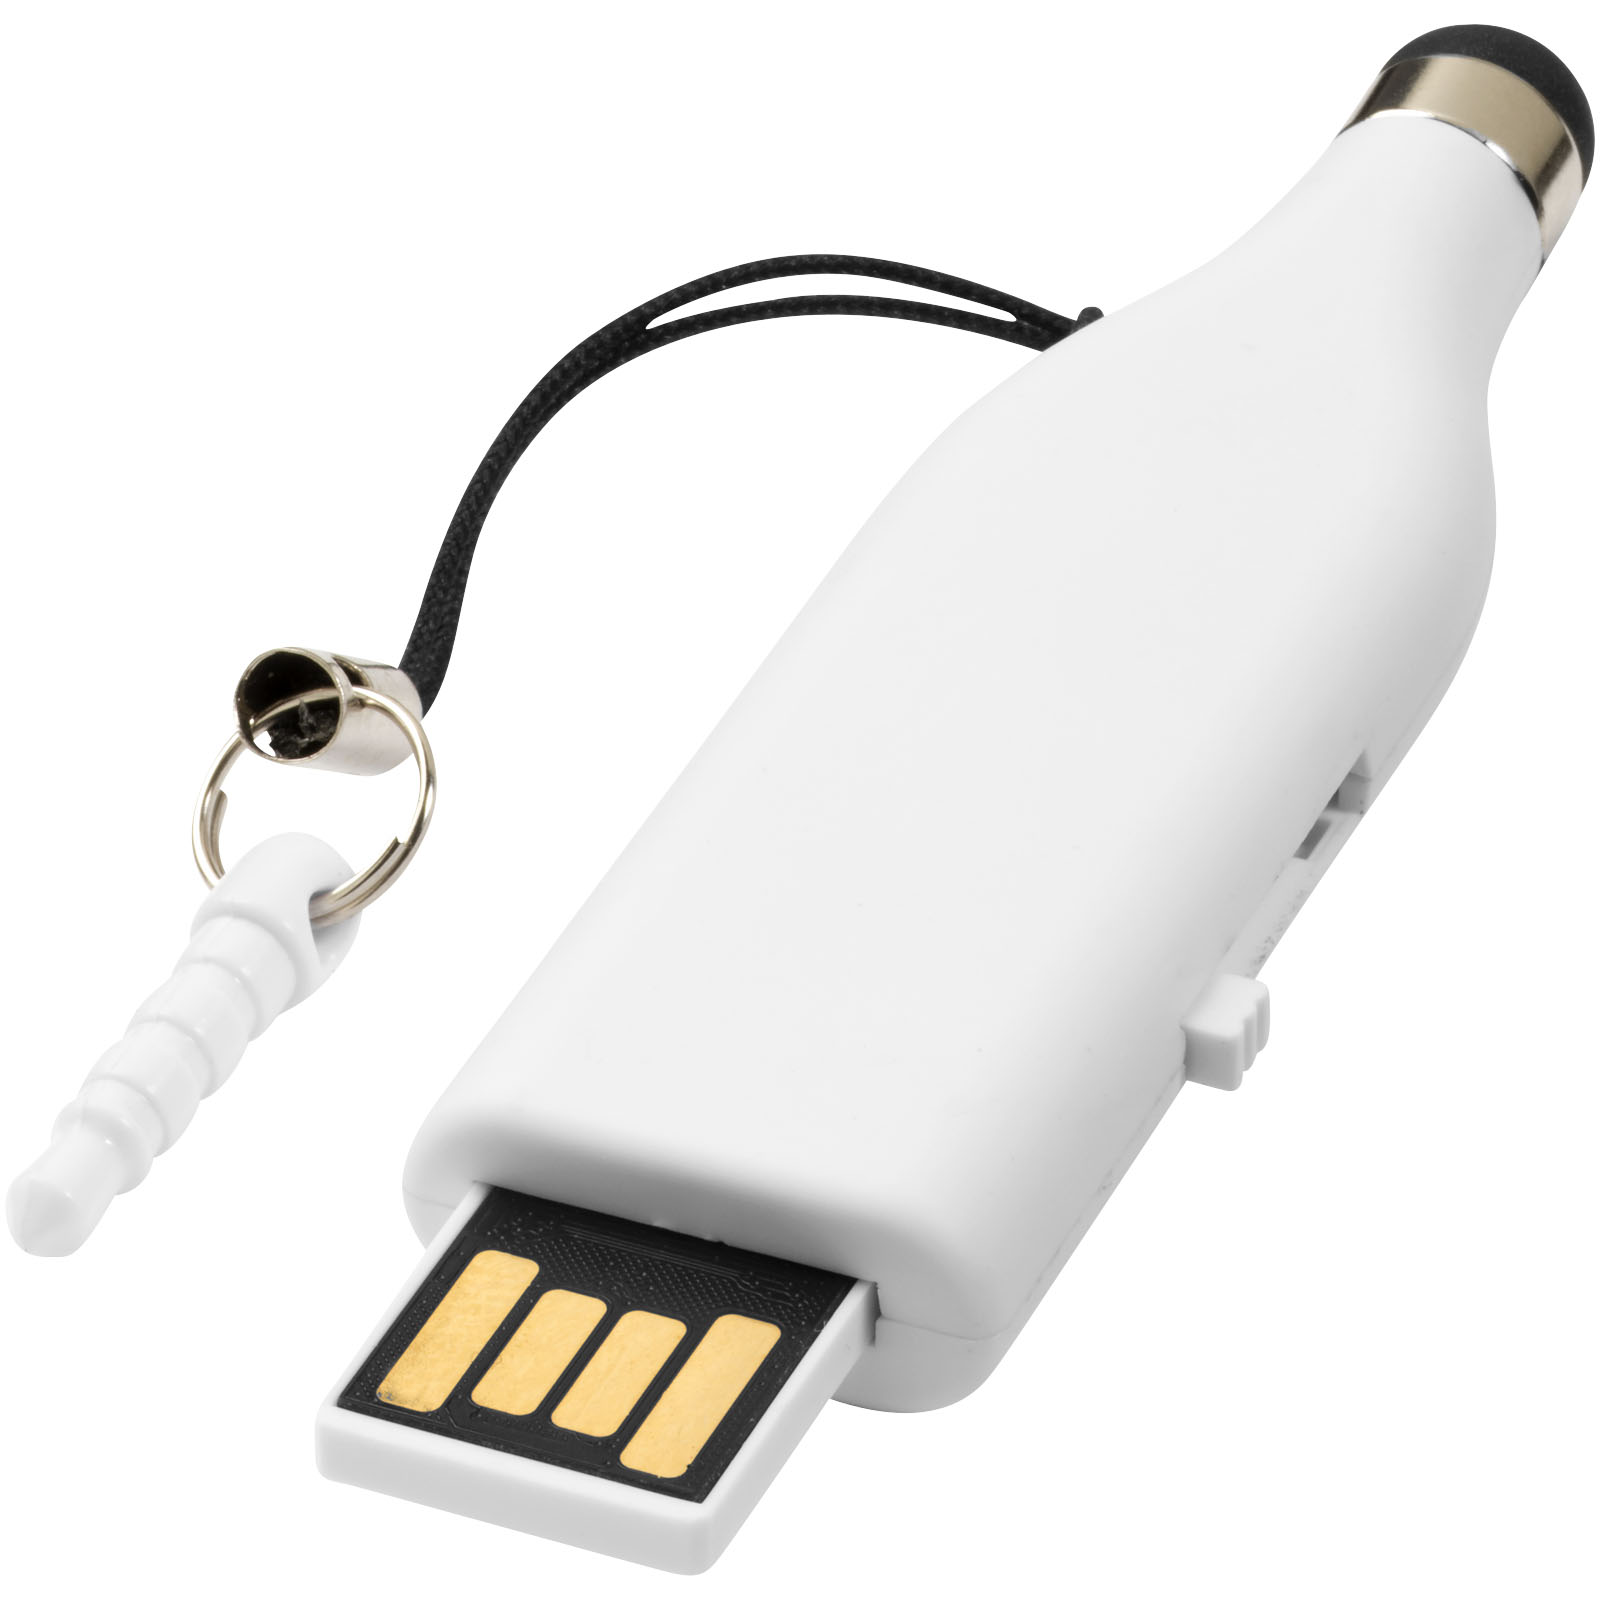 TouchPen USB - Rosenau